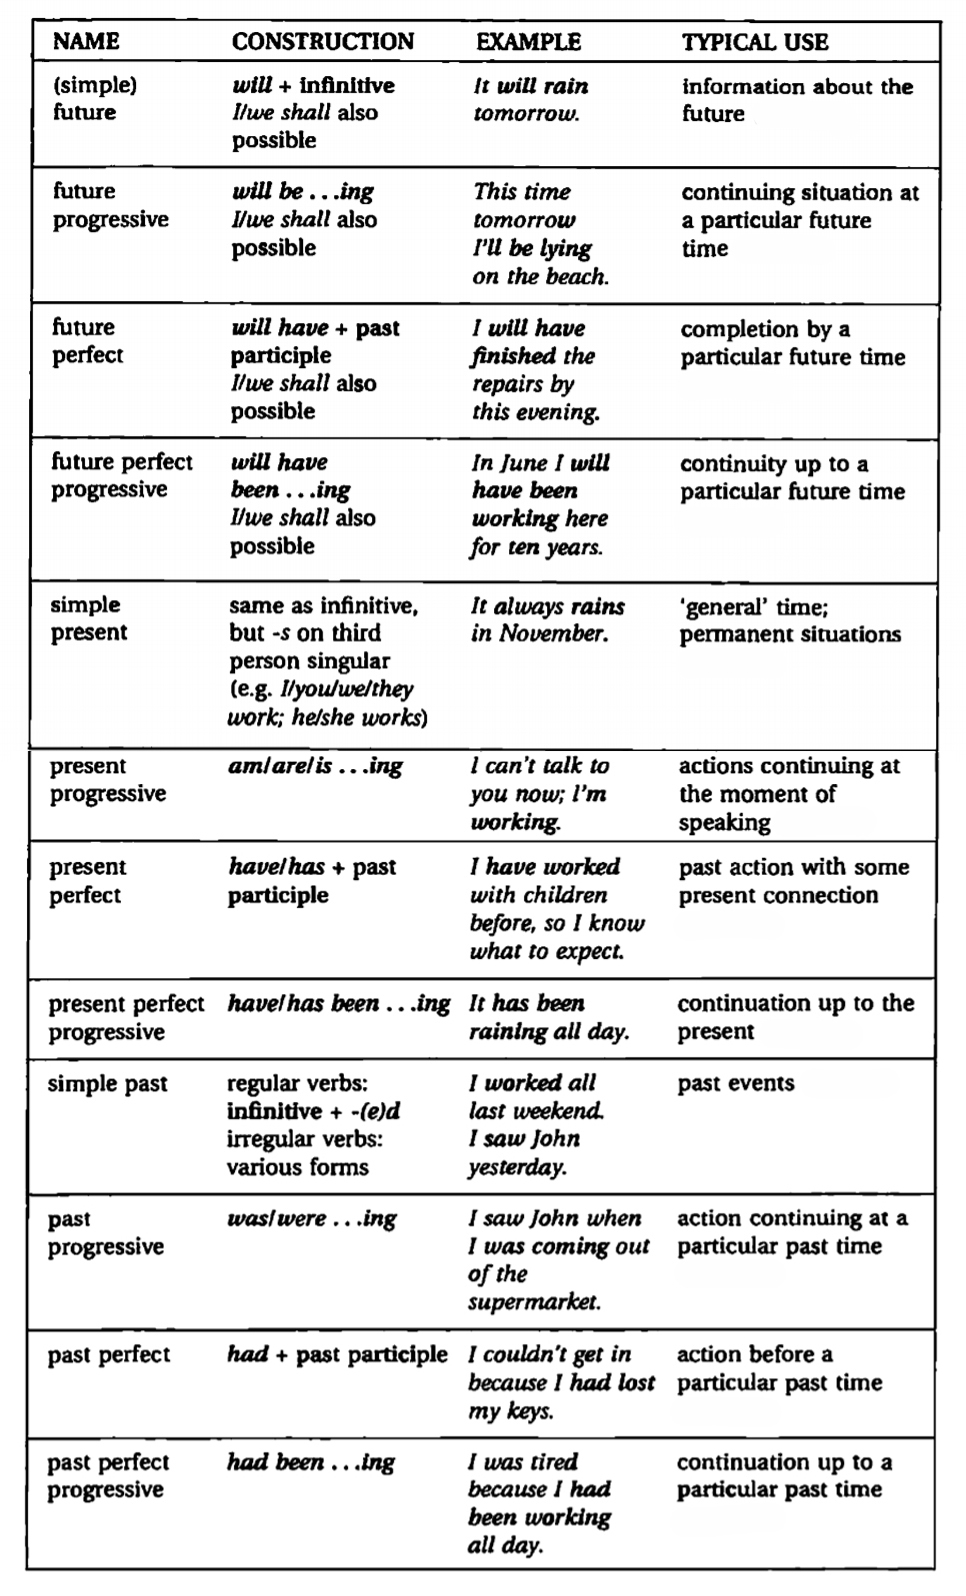 جدول تمامی حالت های جملات معلوم زبان انگلیسی